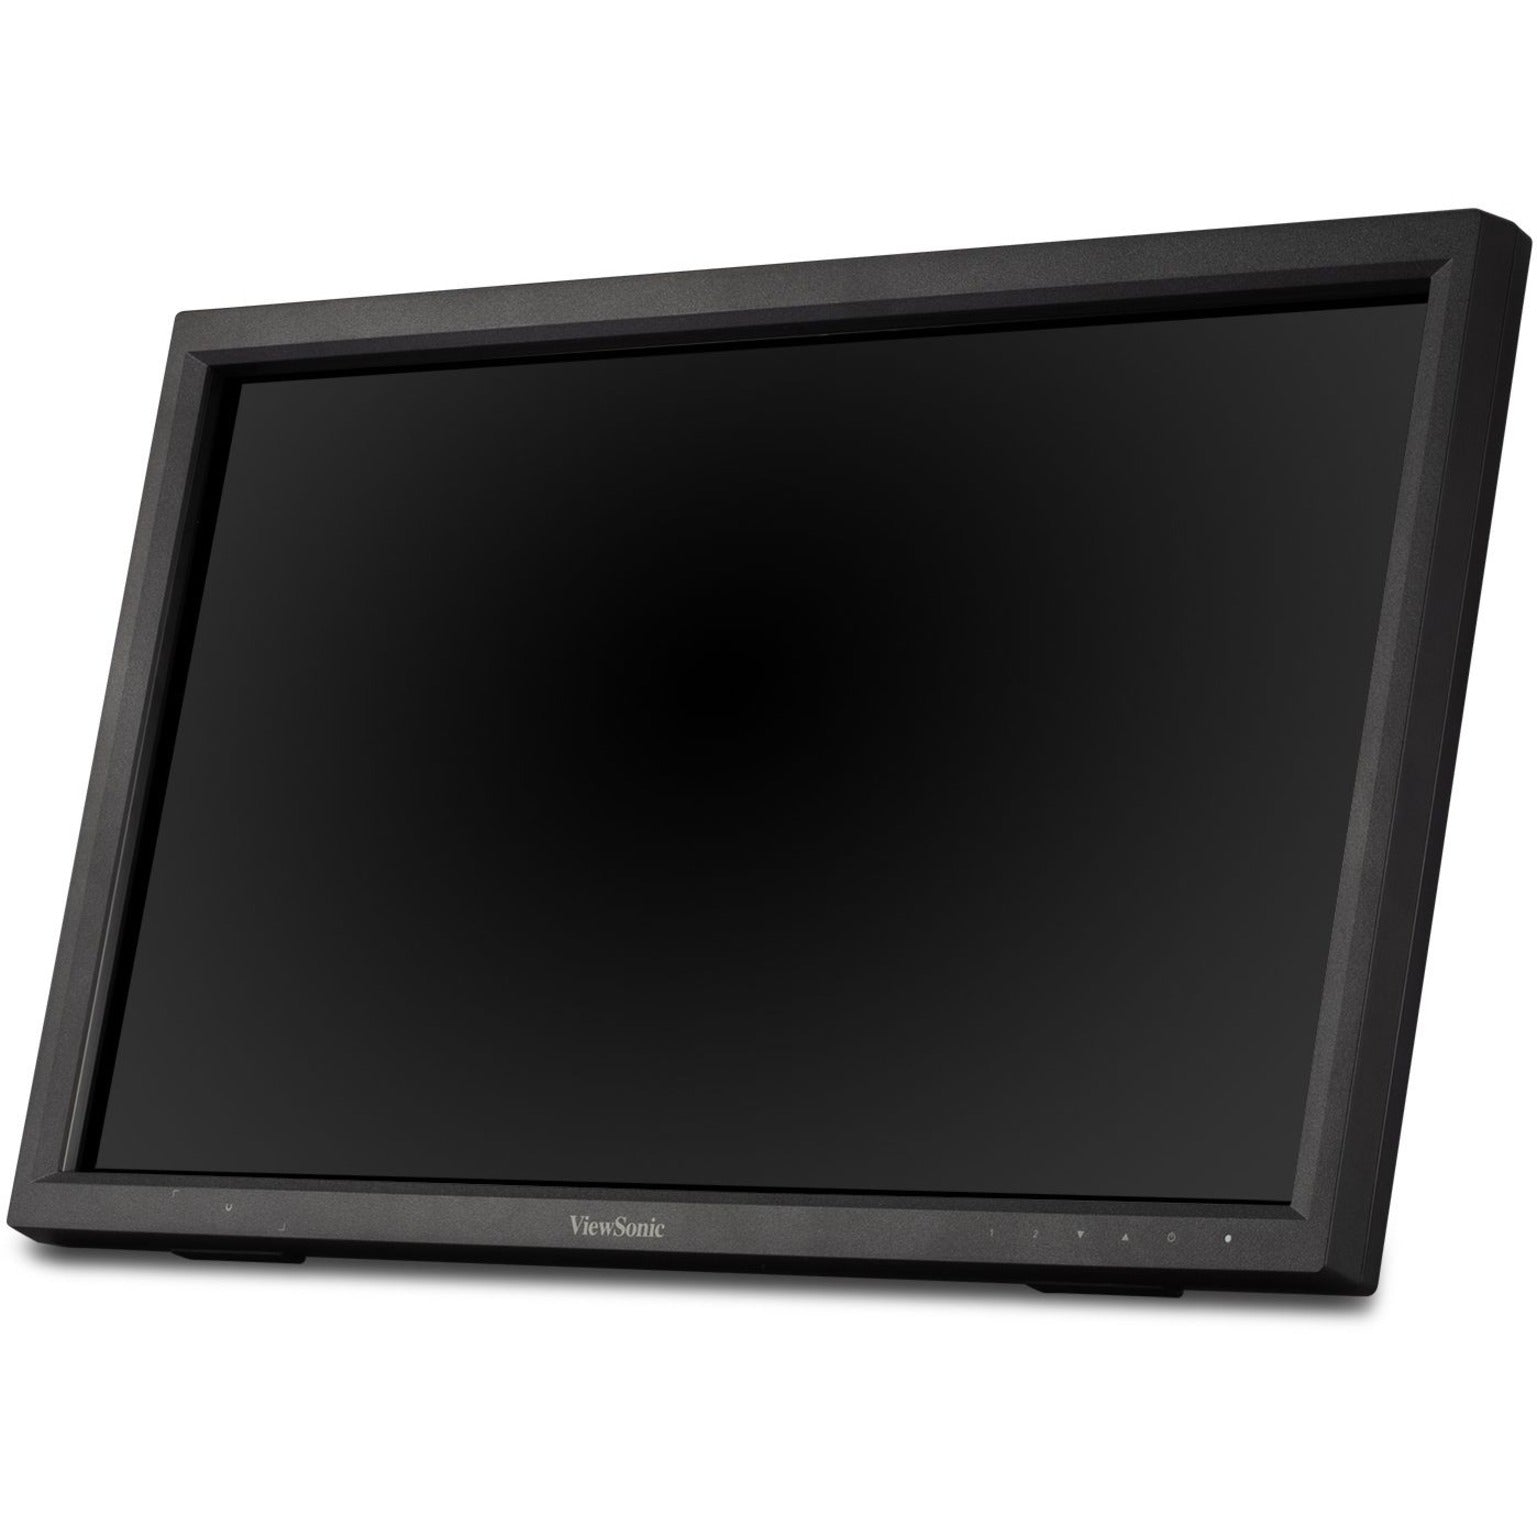 ViewSonic TD2223 22" Touch Display, Full HD, 10-point IR, USB Hub, 3 Year Warranty